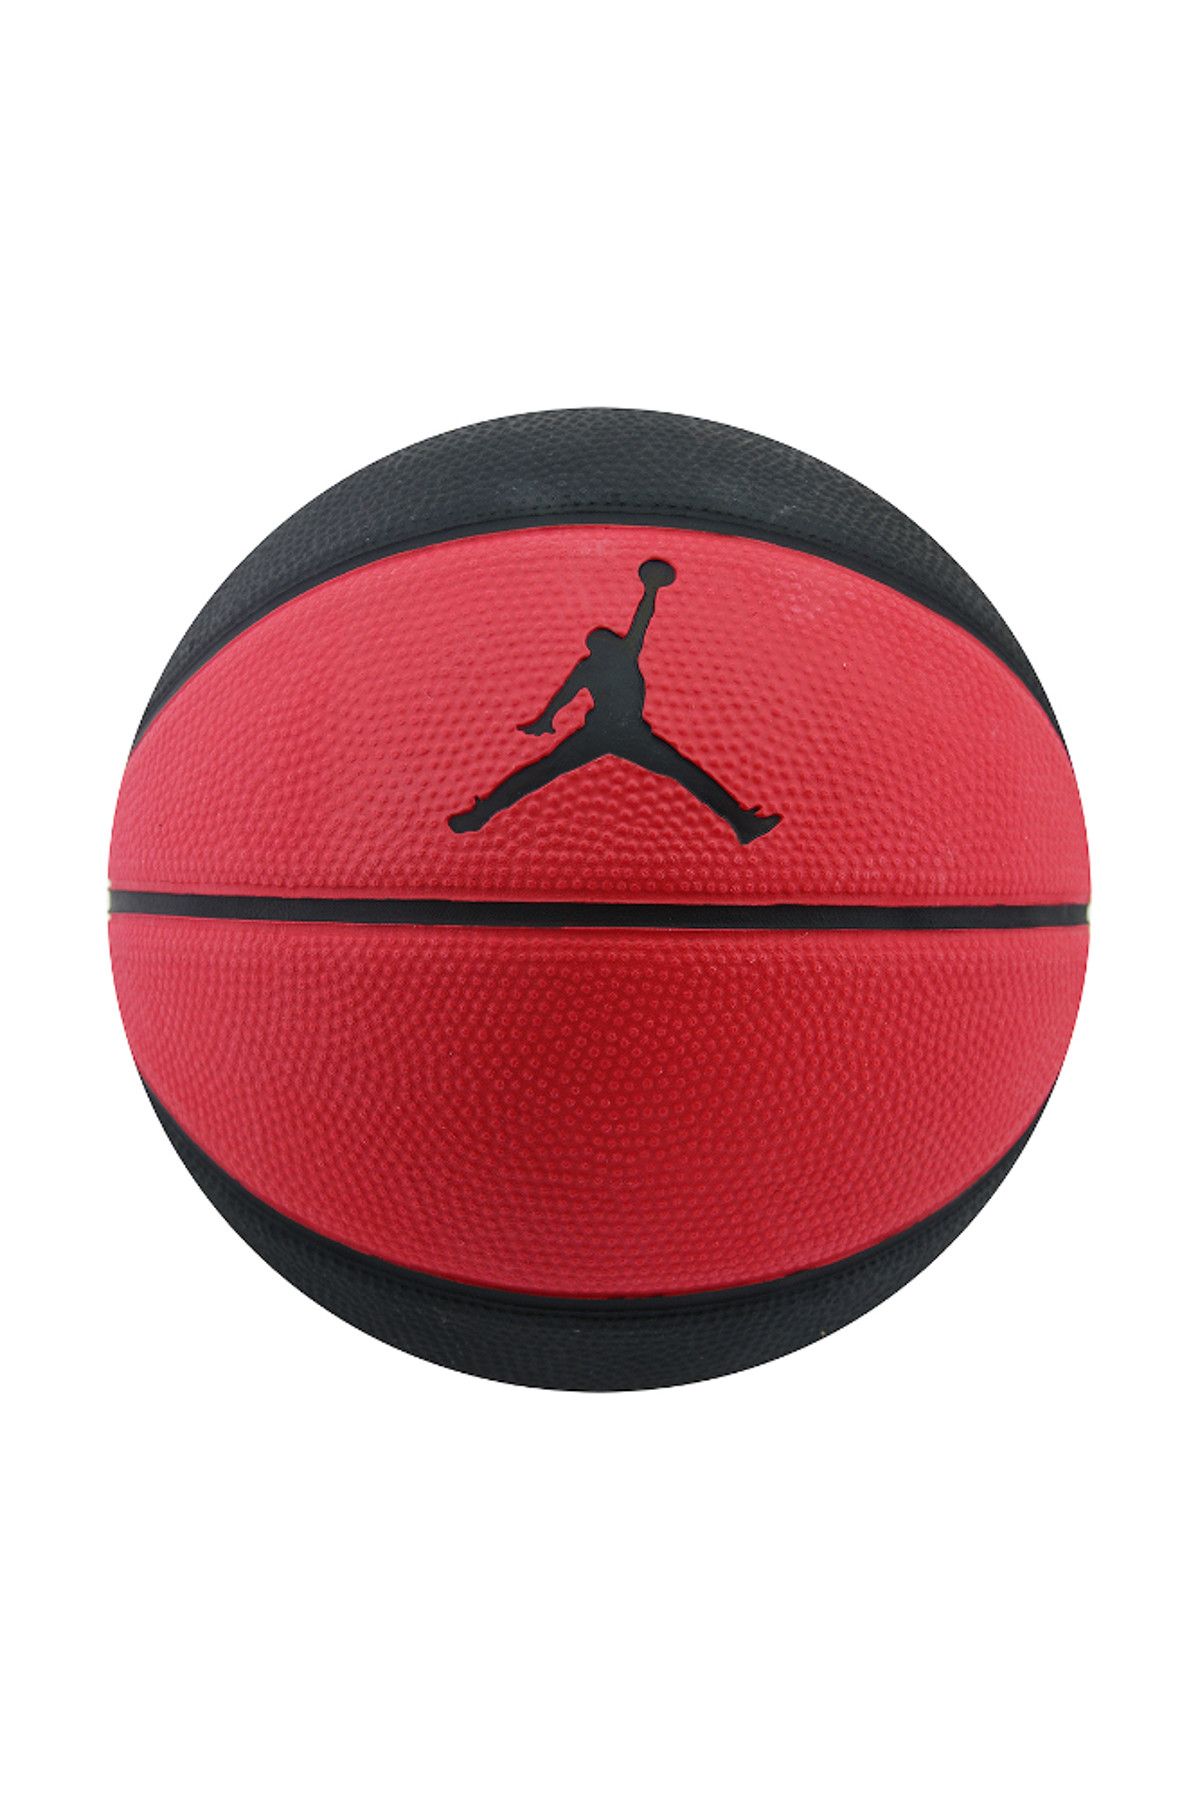 Nike Unisex Spor Malzemeleri - Jordan Skills Kauçuk Unisex No 3 Mini Basketbol Topu - Jkı03-682